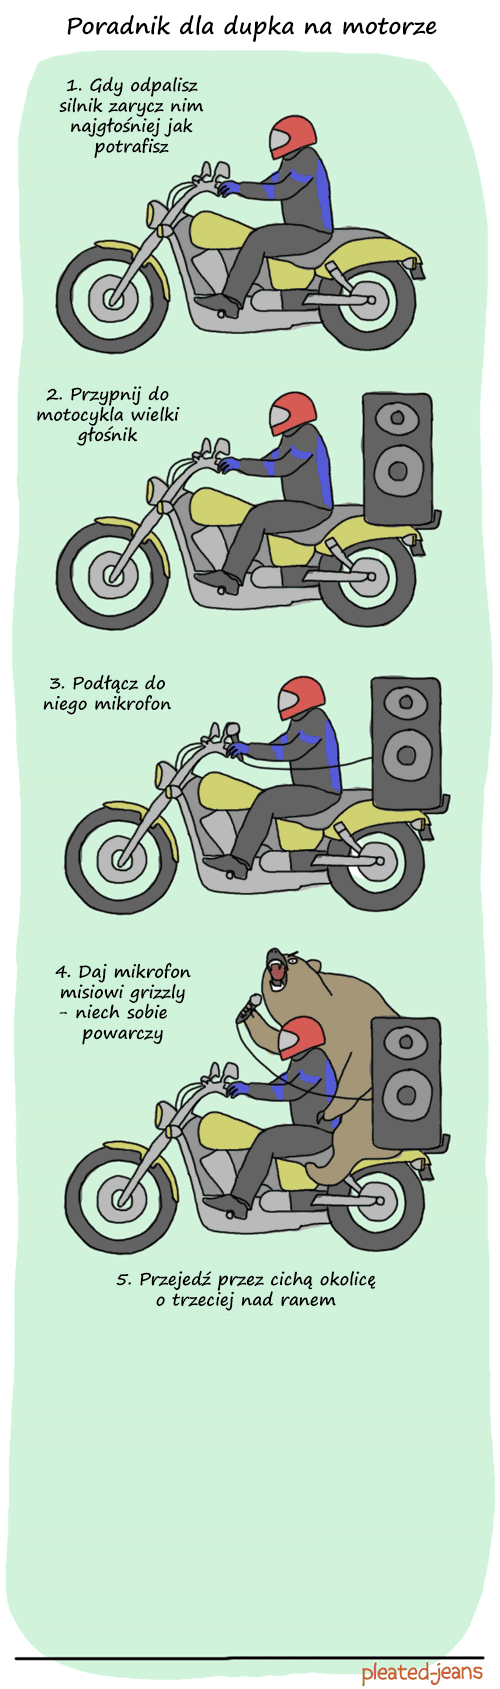 Jak być dupkiem na motorze